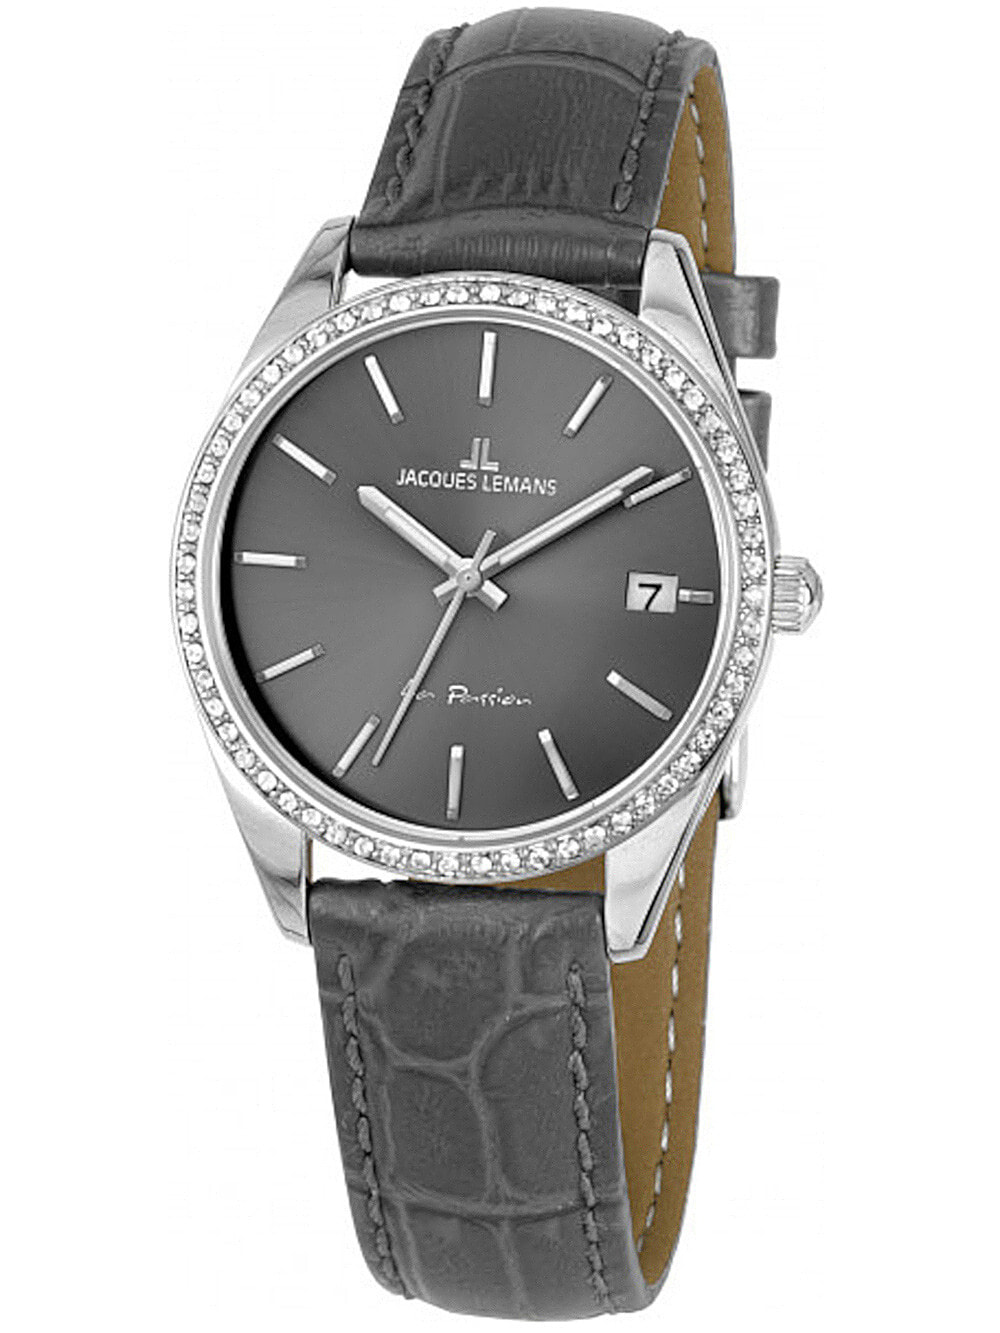 Женские наручные кварцевые часы Jacques Lemans ремешок из телячьей кожи. Водонепроницаемость-10 АТМ. Прочное, минеральное стекло защищает ваши часы от непроизвольных травм. Окошко с датой. Декорирован кристалами  Swarovski.